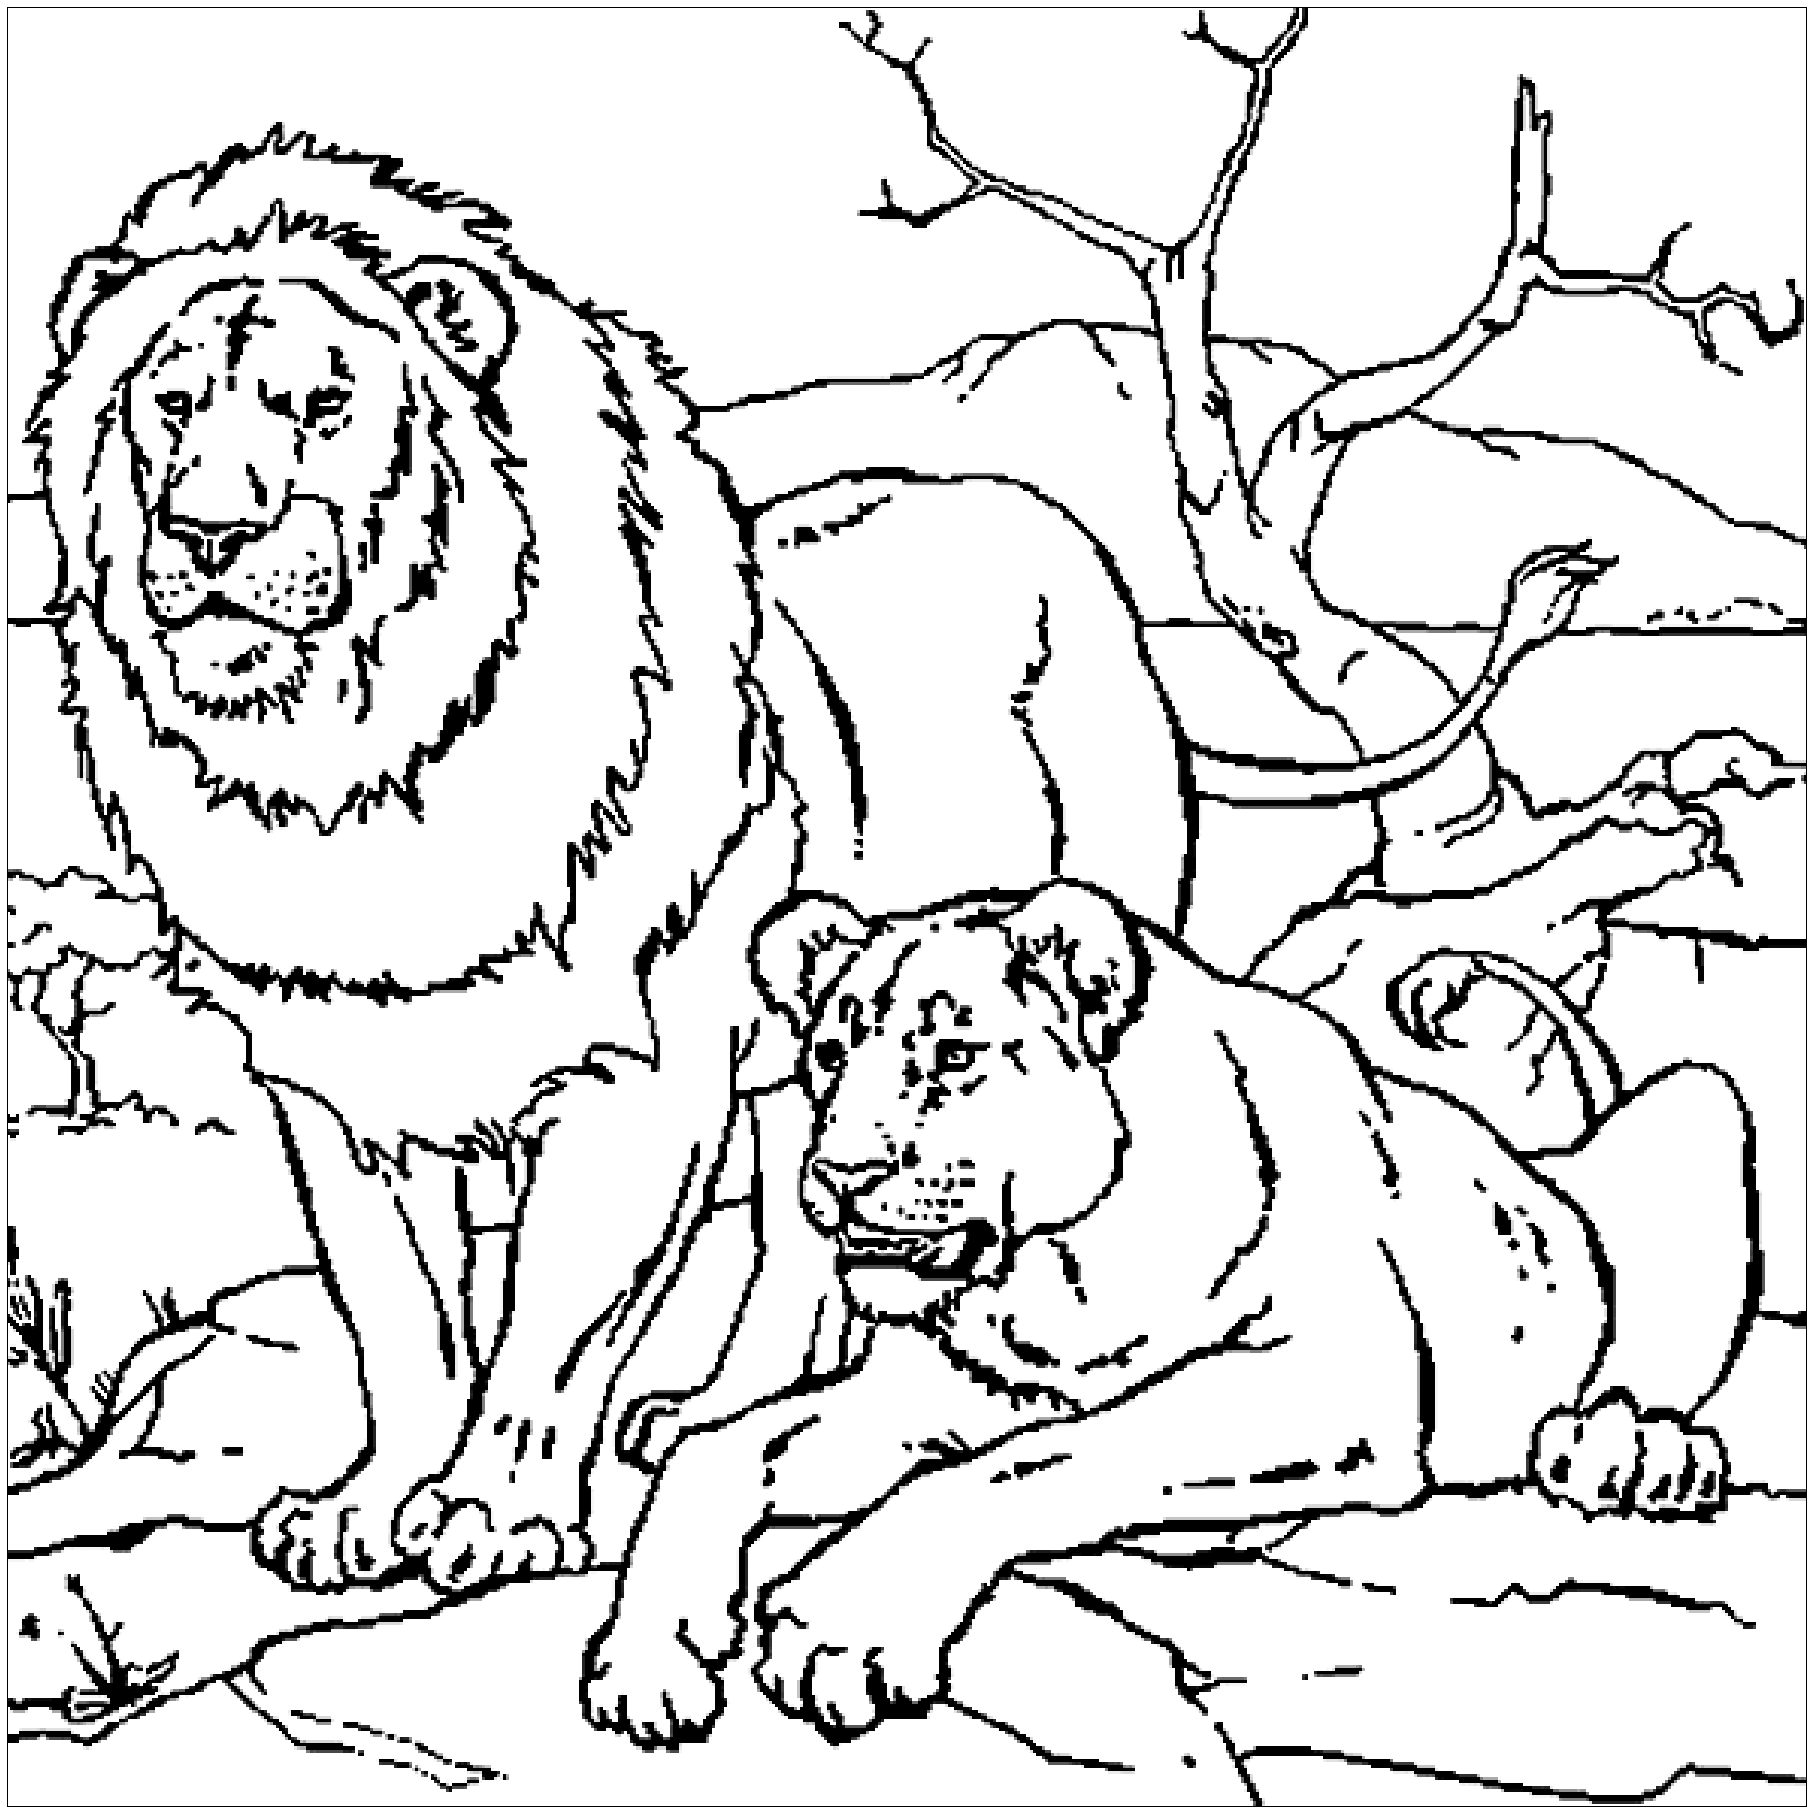 El León y su cuenca leonesa